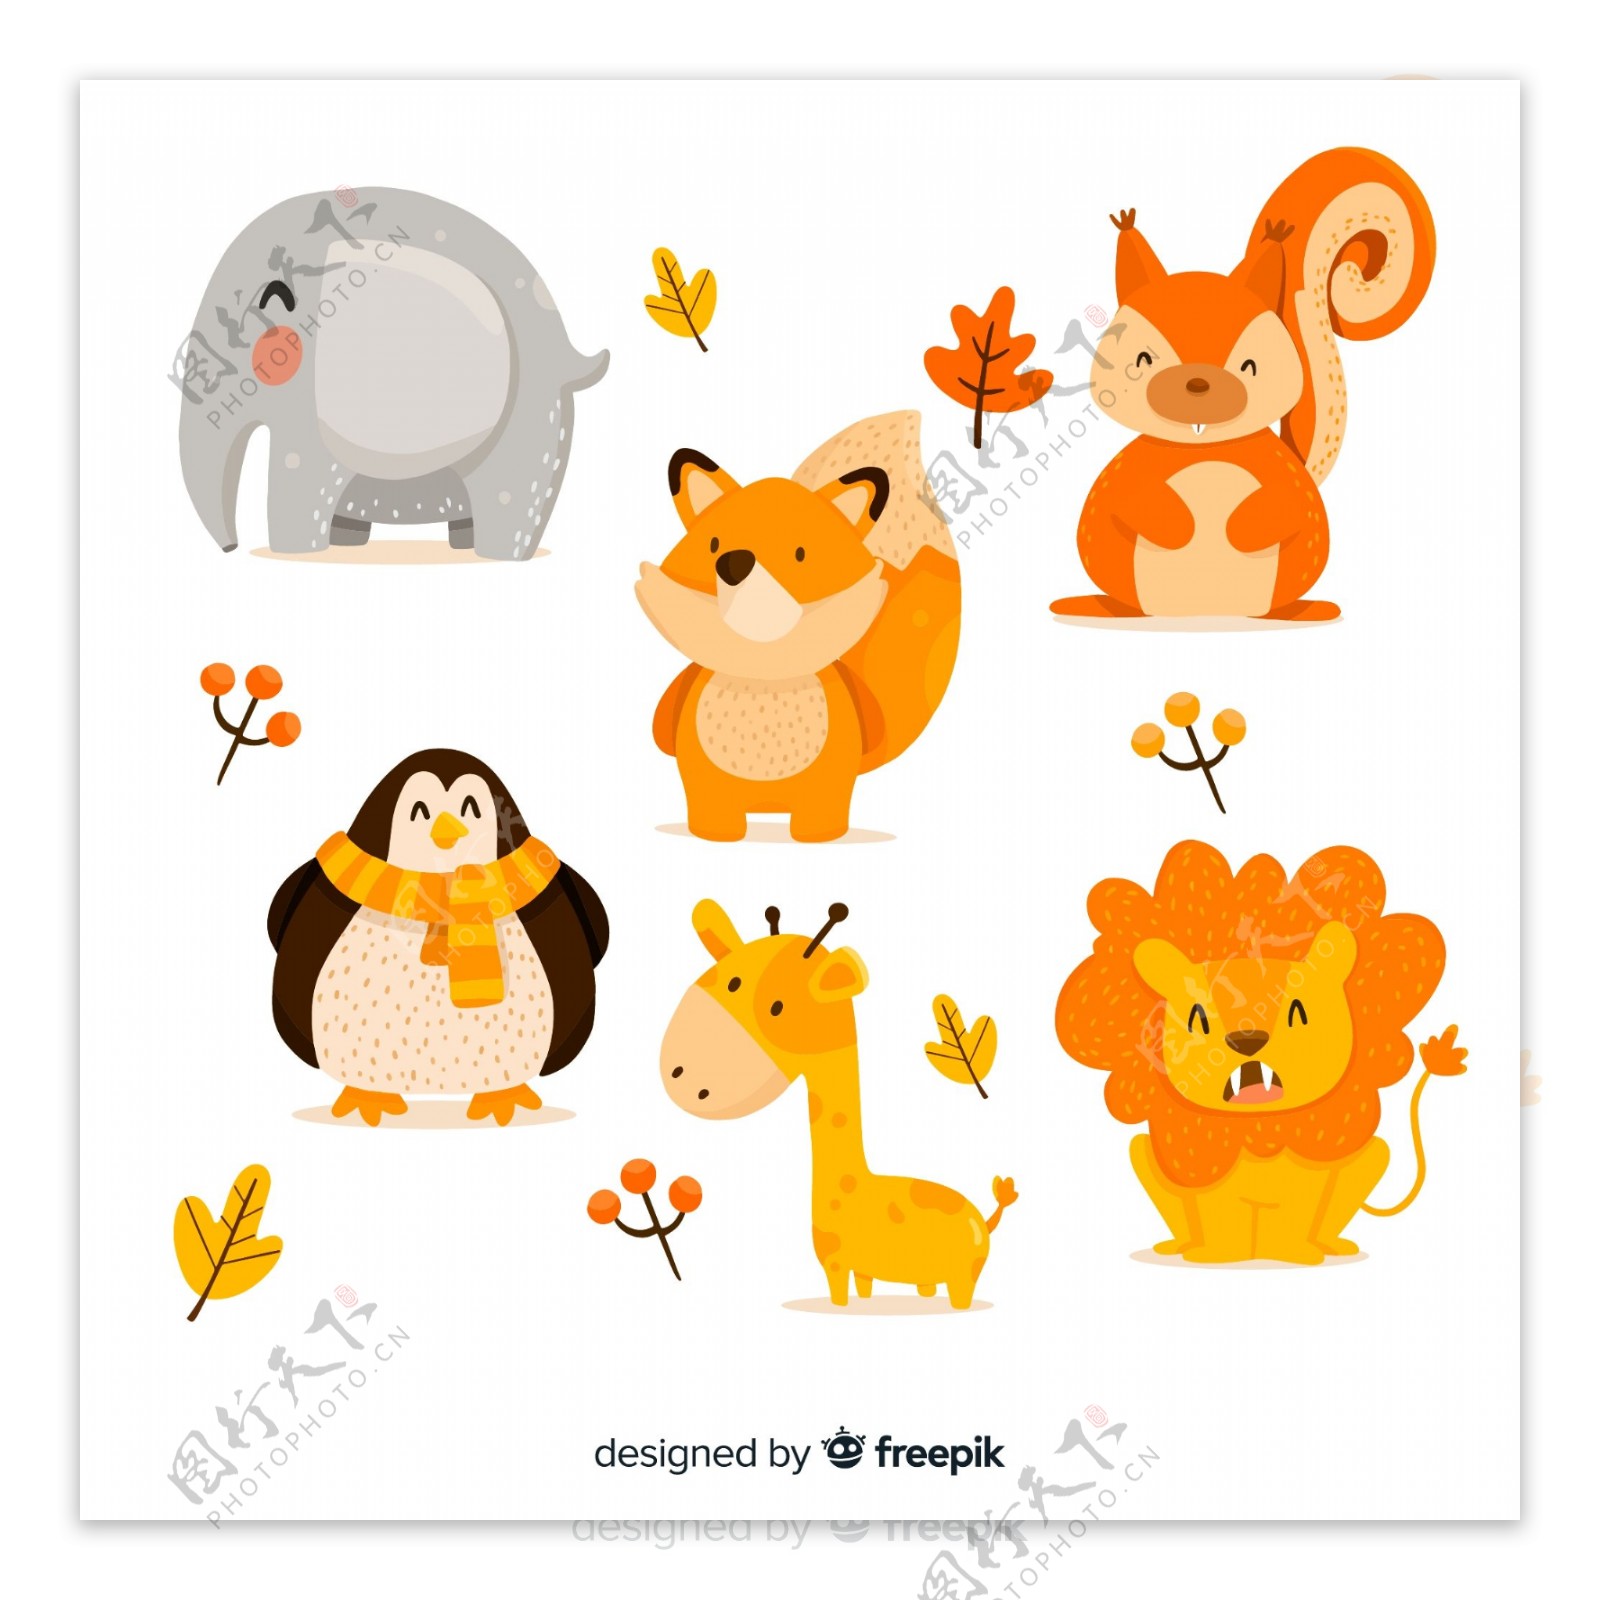 6款可爱动物秋季动物设计矢